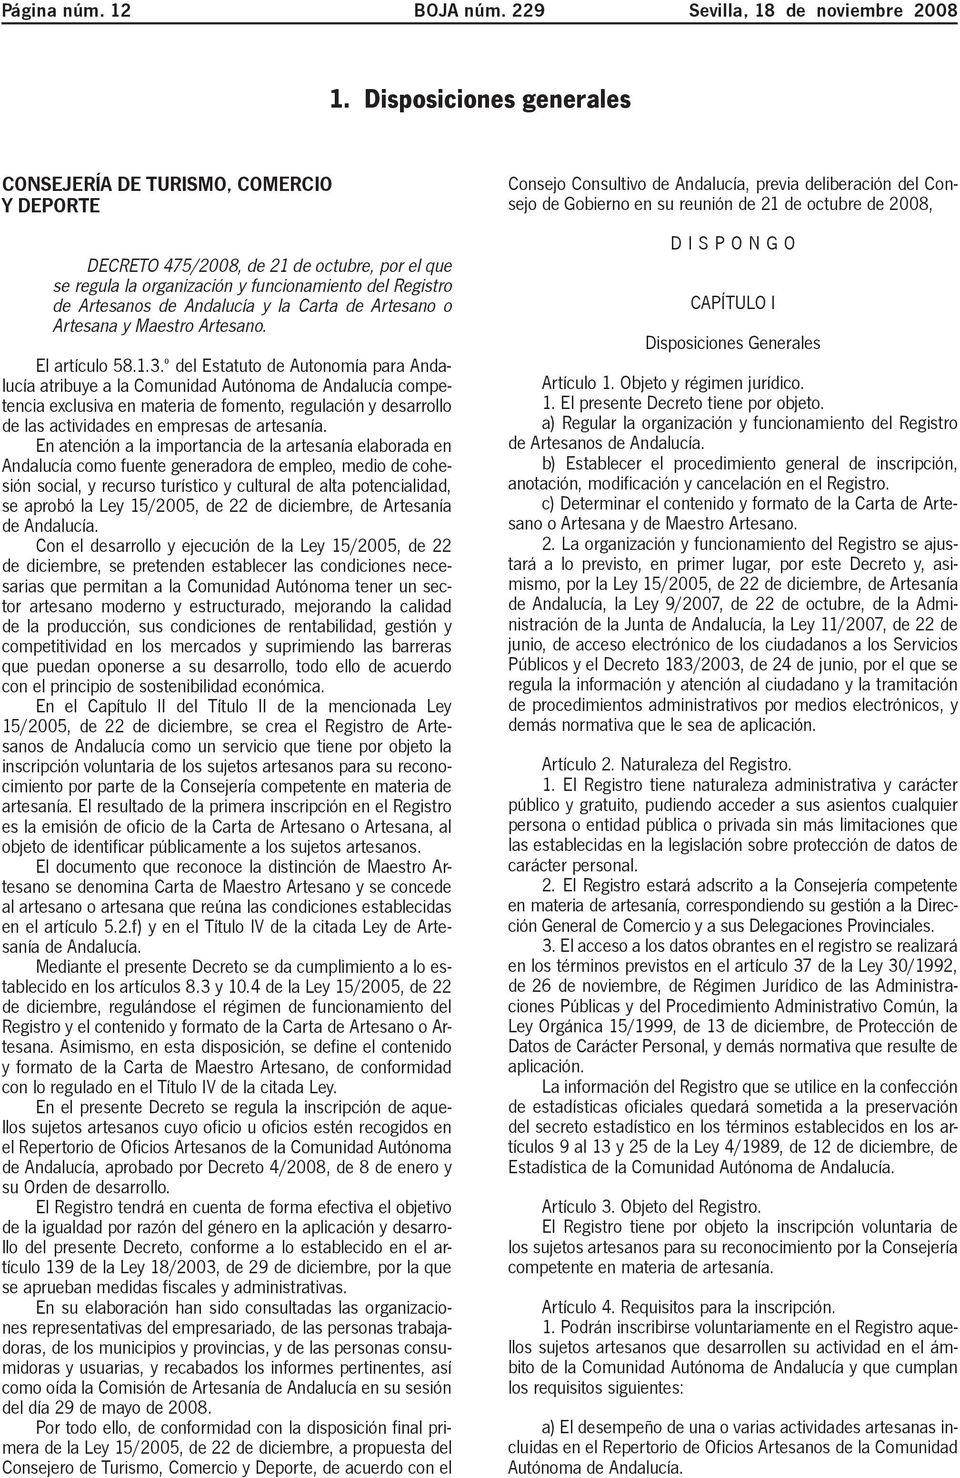 Carta de Artesano o Artesana y Maestro Artesano. El artículo 58.1.3.